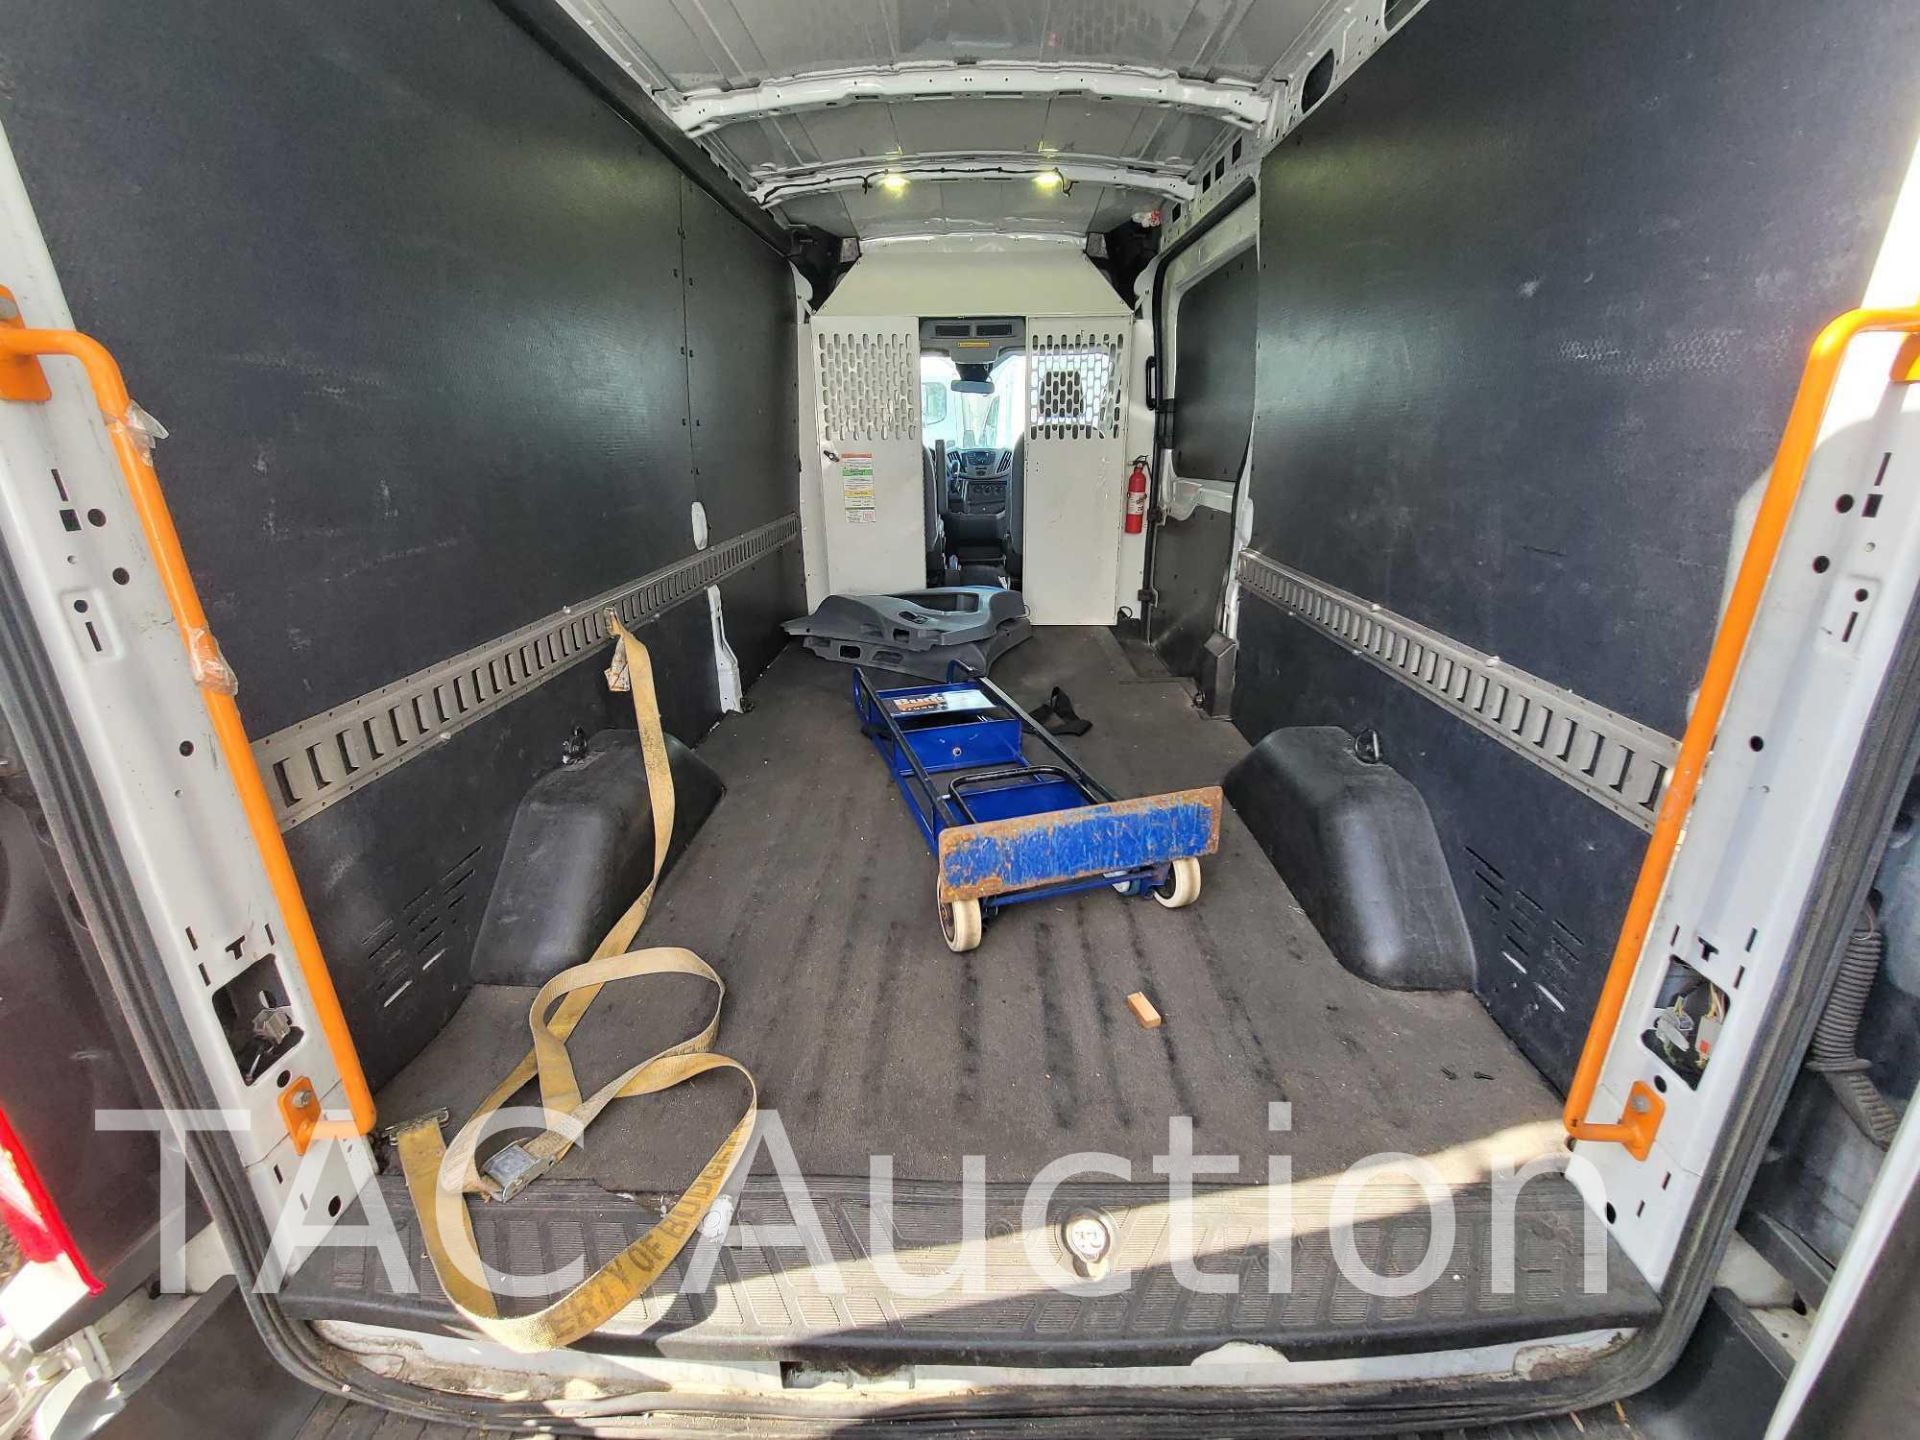 2018 Ford Transit 150 Cargo Van - Image 9 of 40